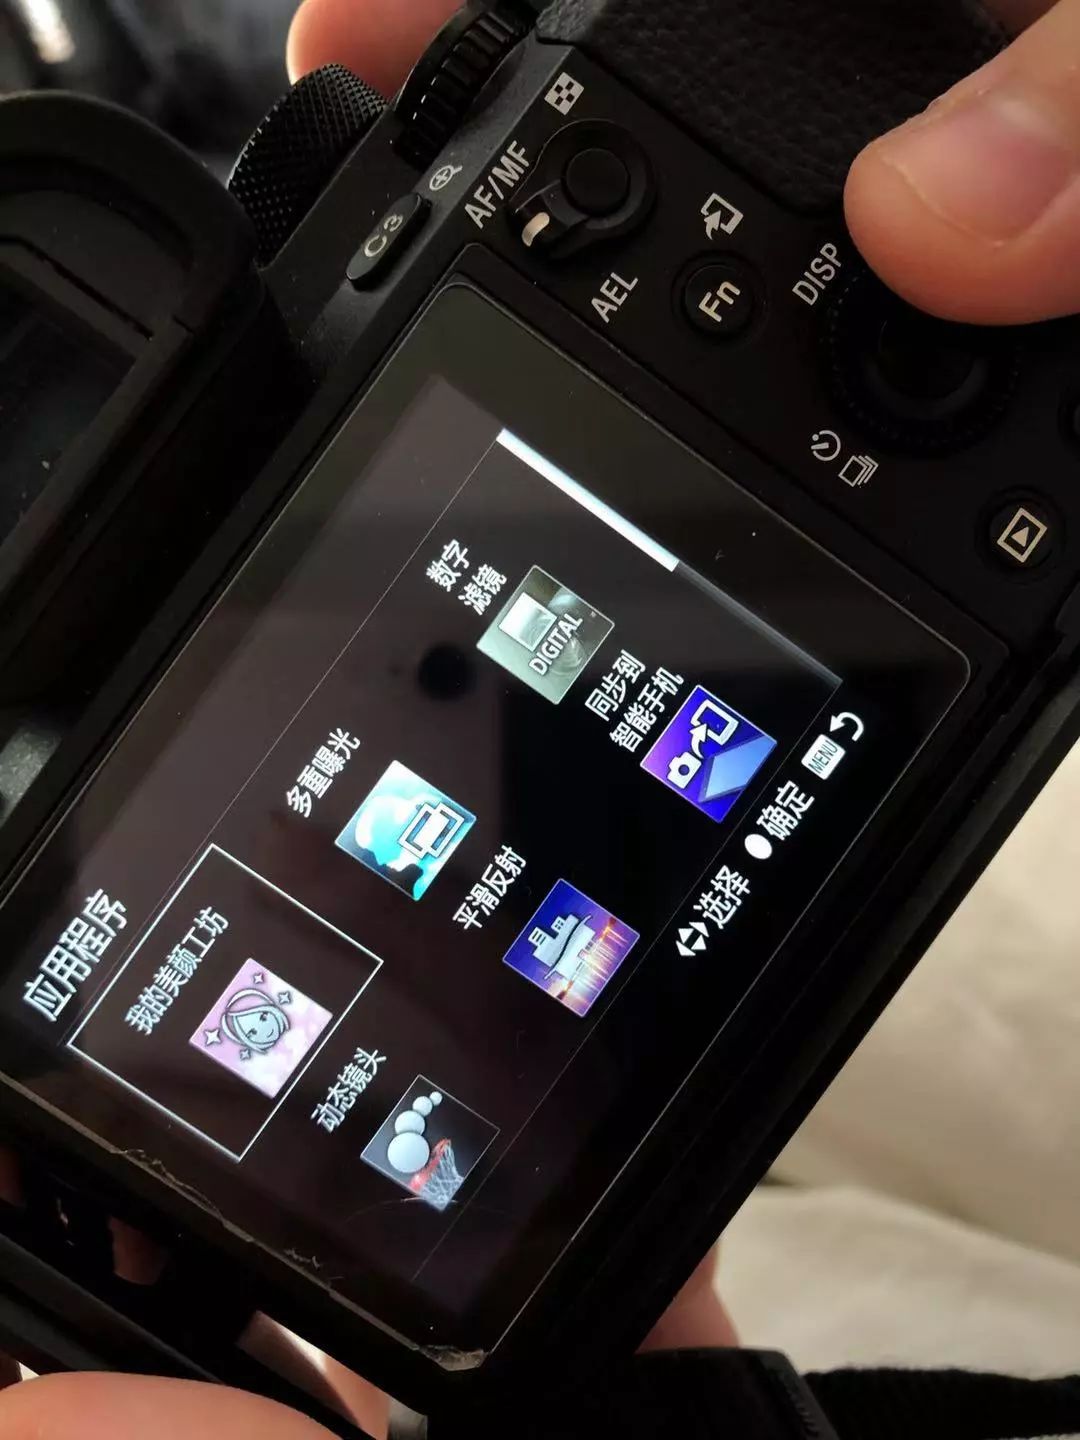 黑科技赋能 索尼Xperia 1上的专业影像体验